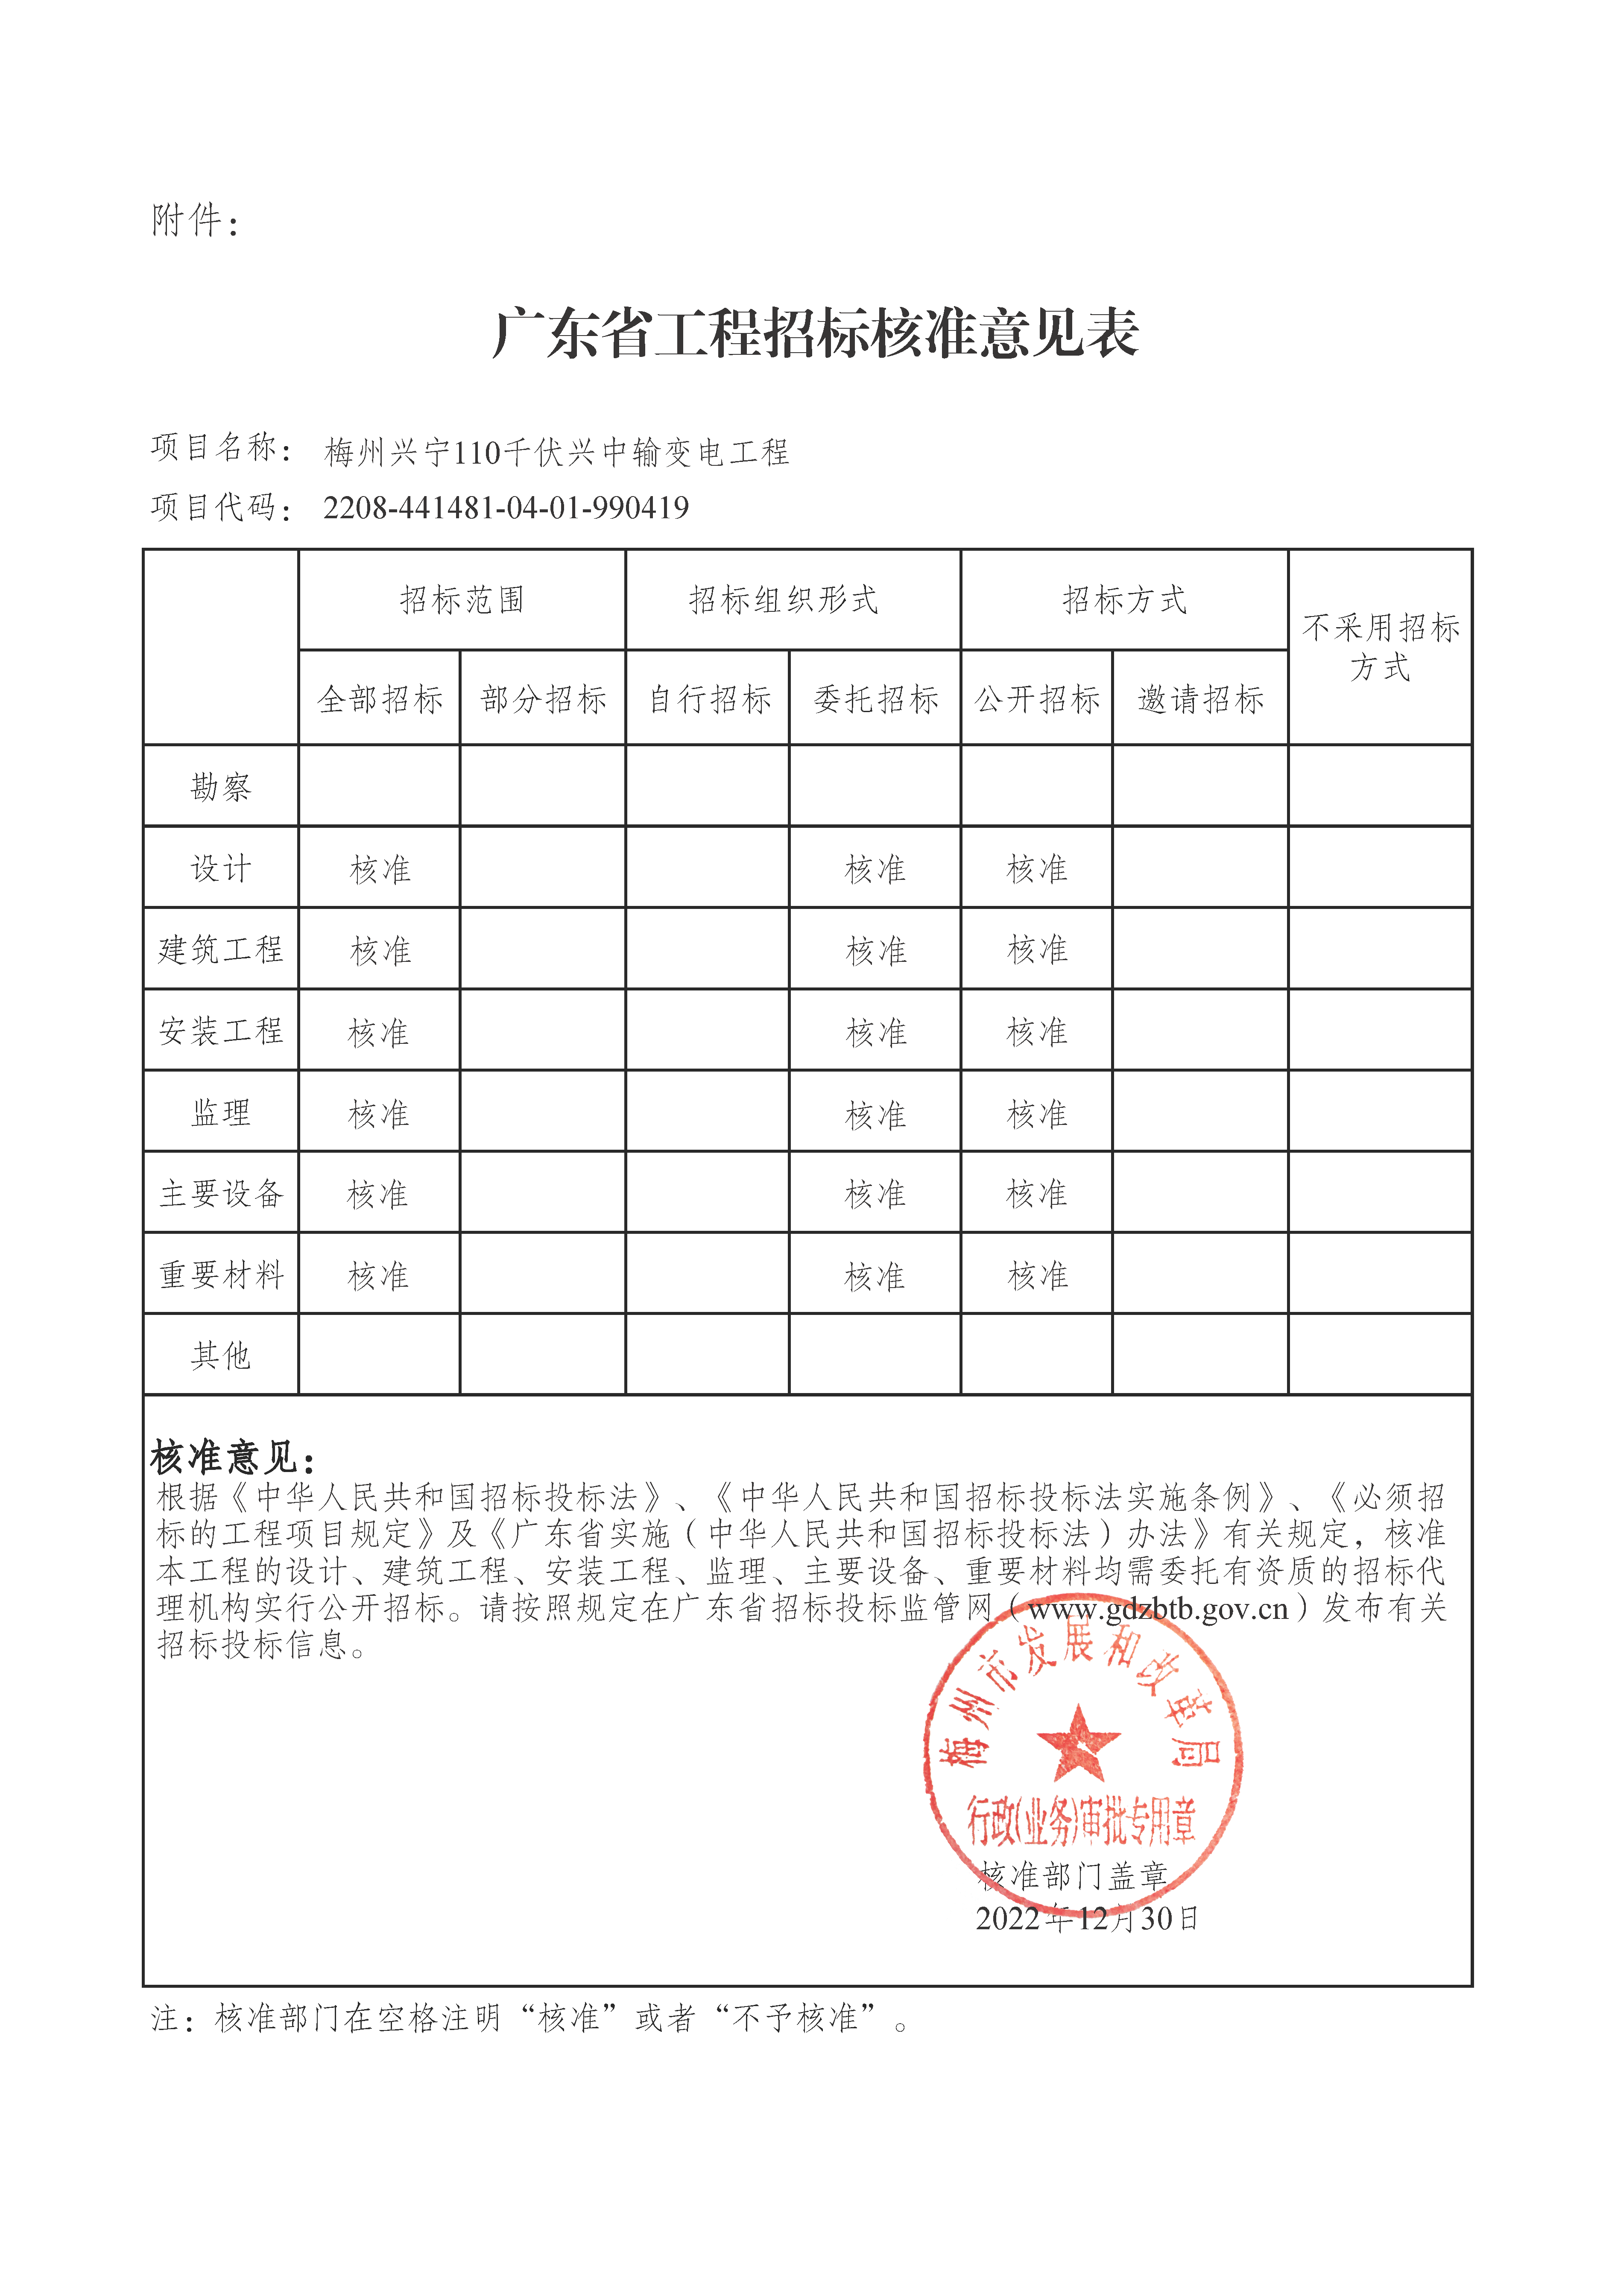 附件1：梅州兴宁110千伏兴中输变电工程招标方式.png